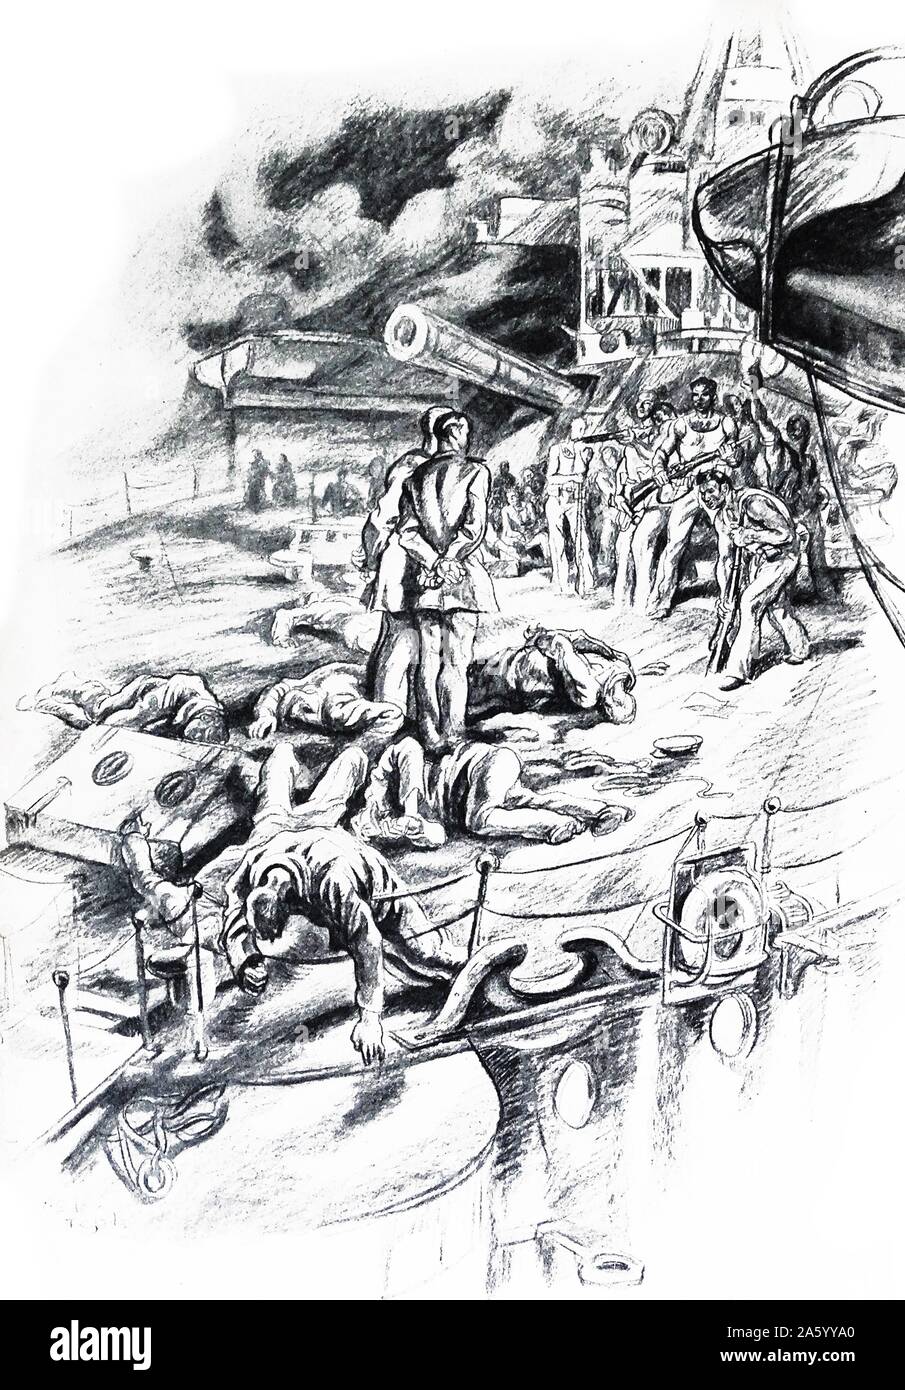 Republikanische Meuterer greifen ein Schiff während des spanischen Bürgerkrieges. Illustration von Carlos Saenz de Tejada (1897-1958), spanischer Maler und Illustrator; identifiziert mit der nationalistischen (faschistischen) Seite im spanischen Bürgerkrieg. Stockfoto